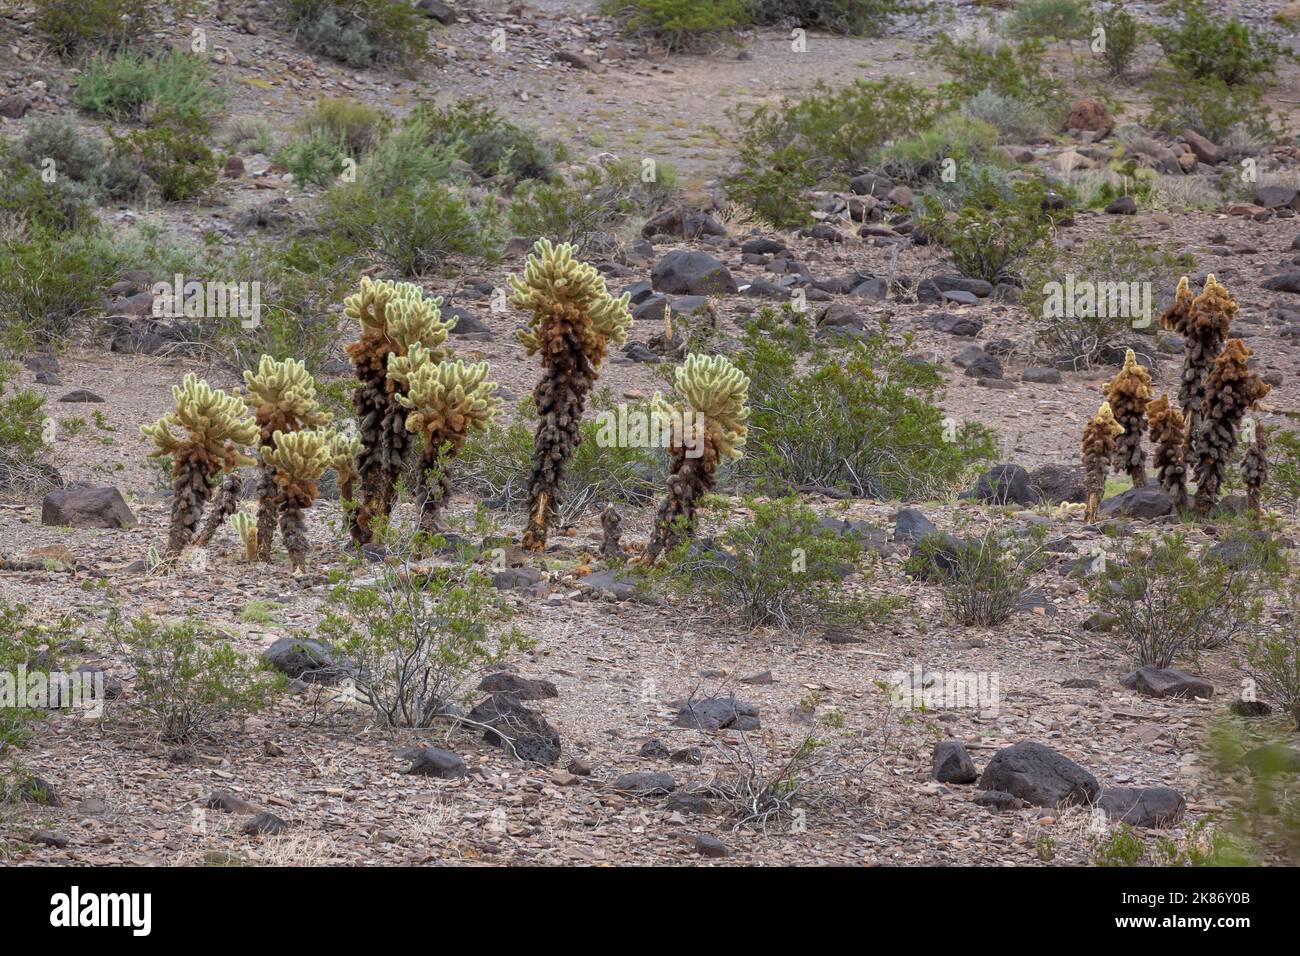 Il cactus di cholla nel deserto di Mojave, il cactus di cholla è una pianta spinosa che si trova nel sud-ovest degli Stati Uniti. È spesso chiamato il "salto ca Foto Stock